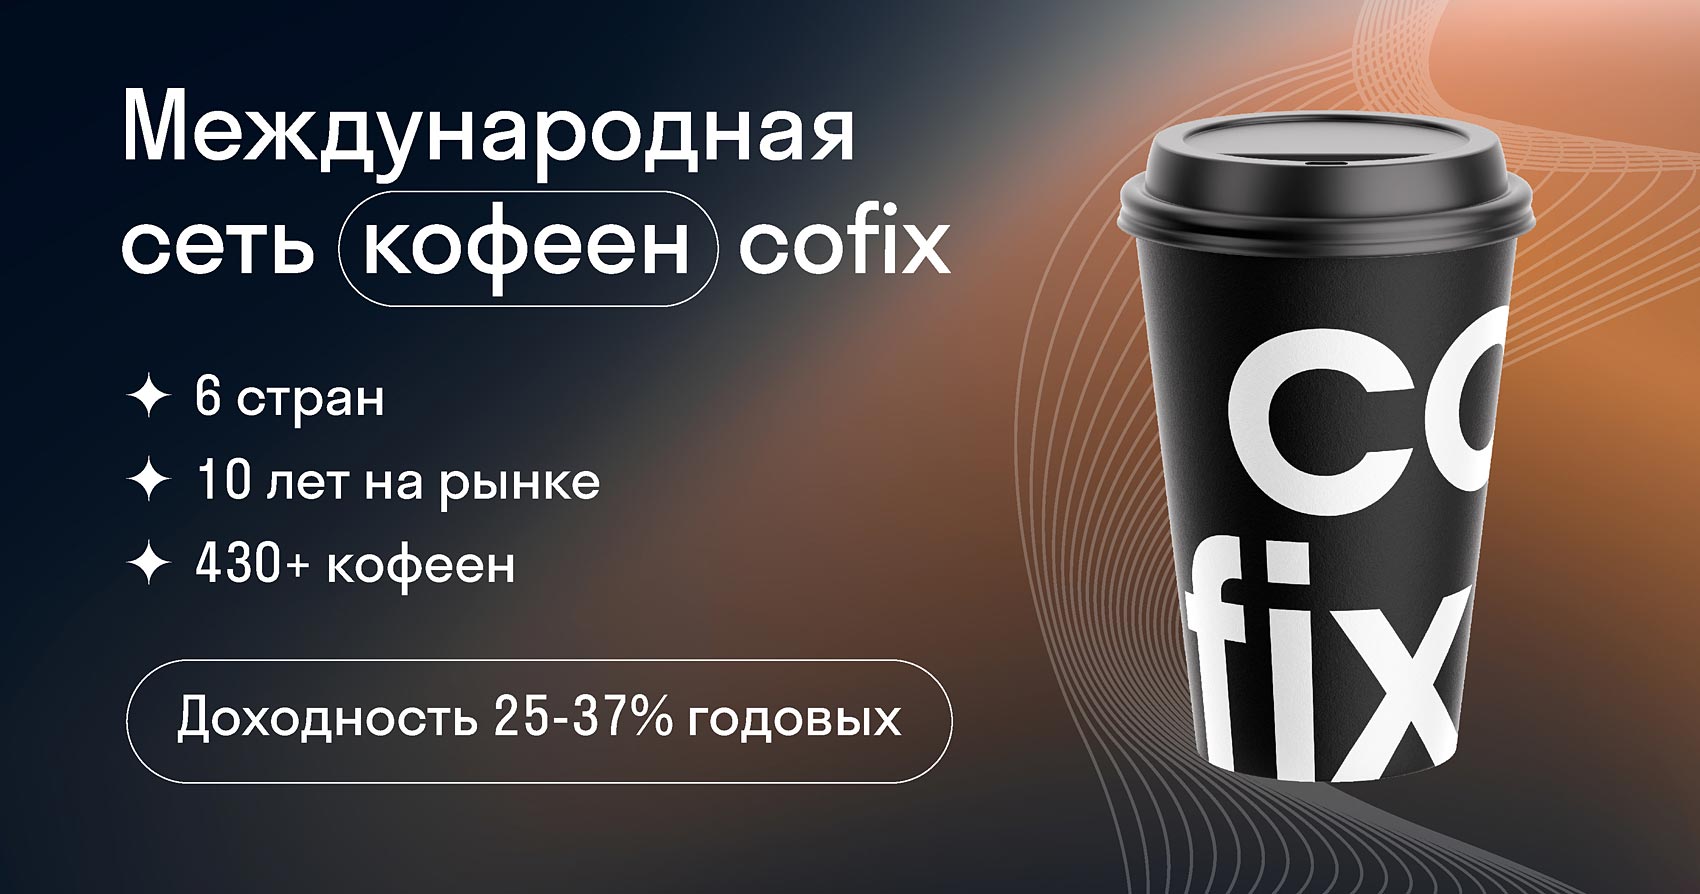 Кофикс франшиза. Глобал кофе франшиза. Cofix или one Price.